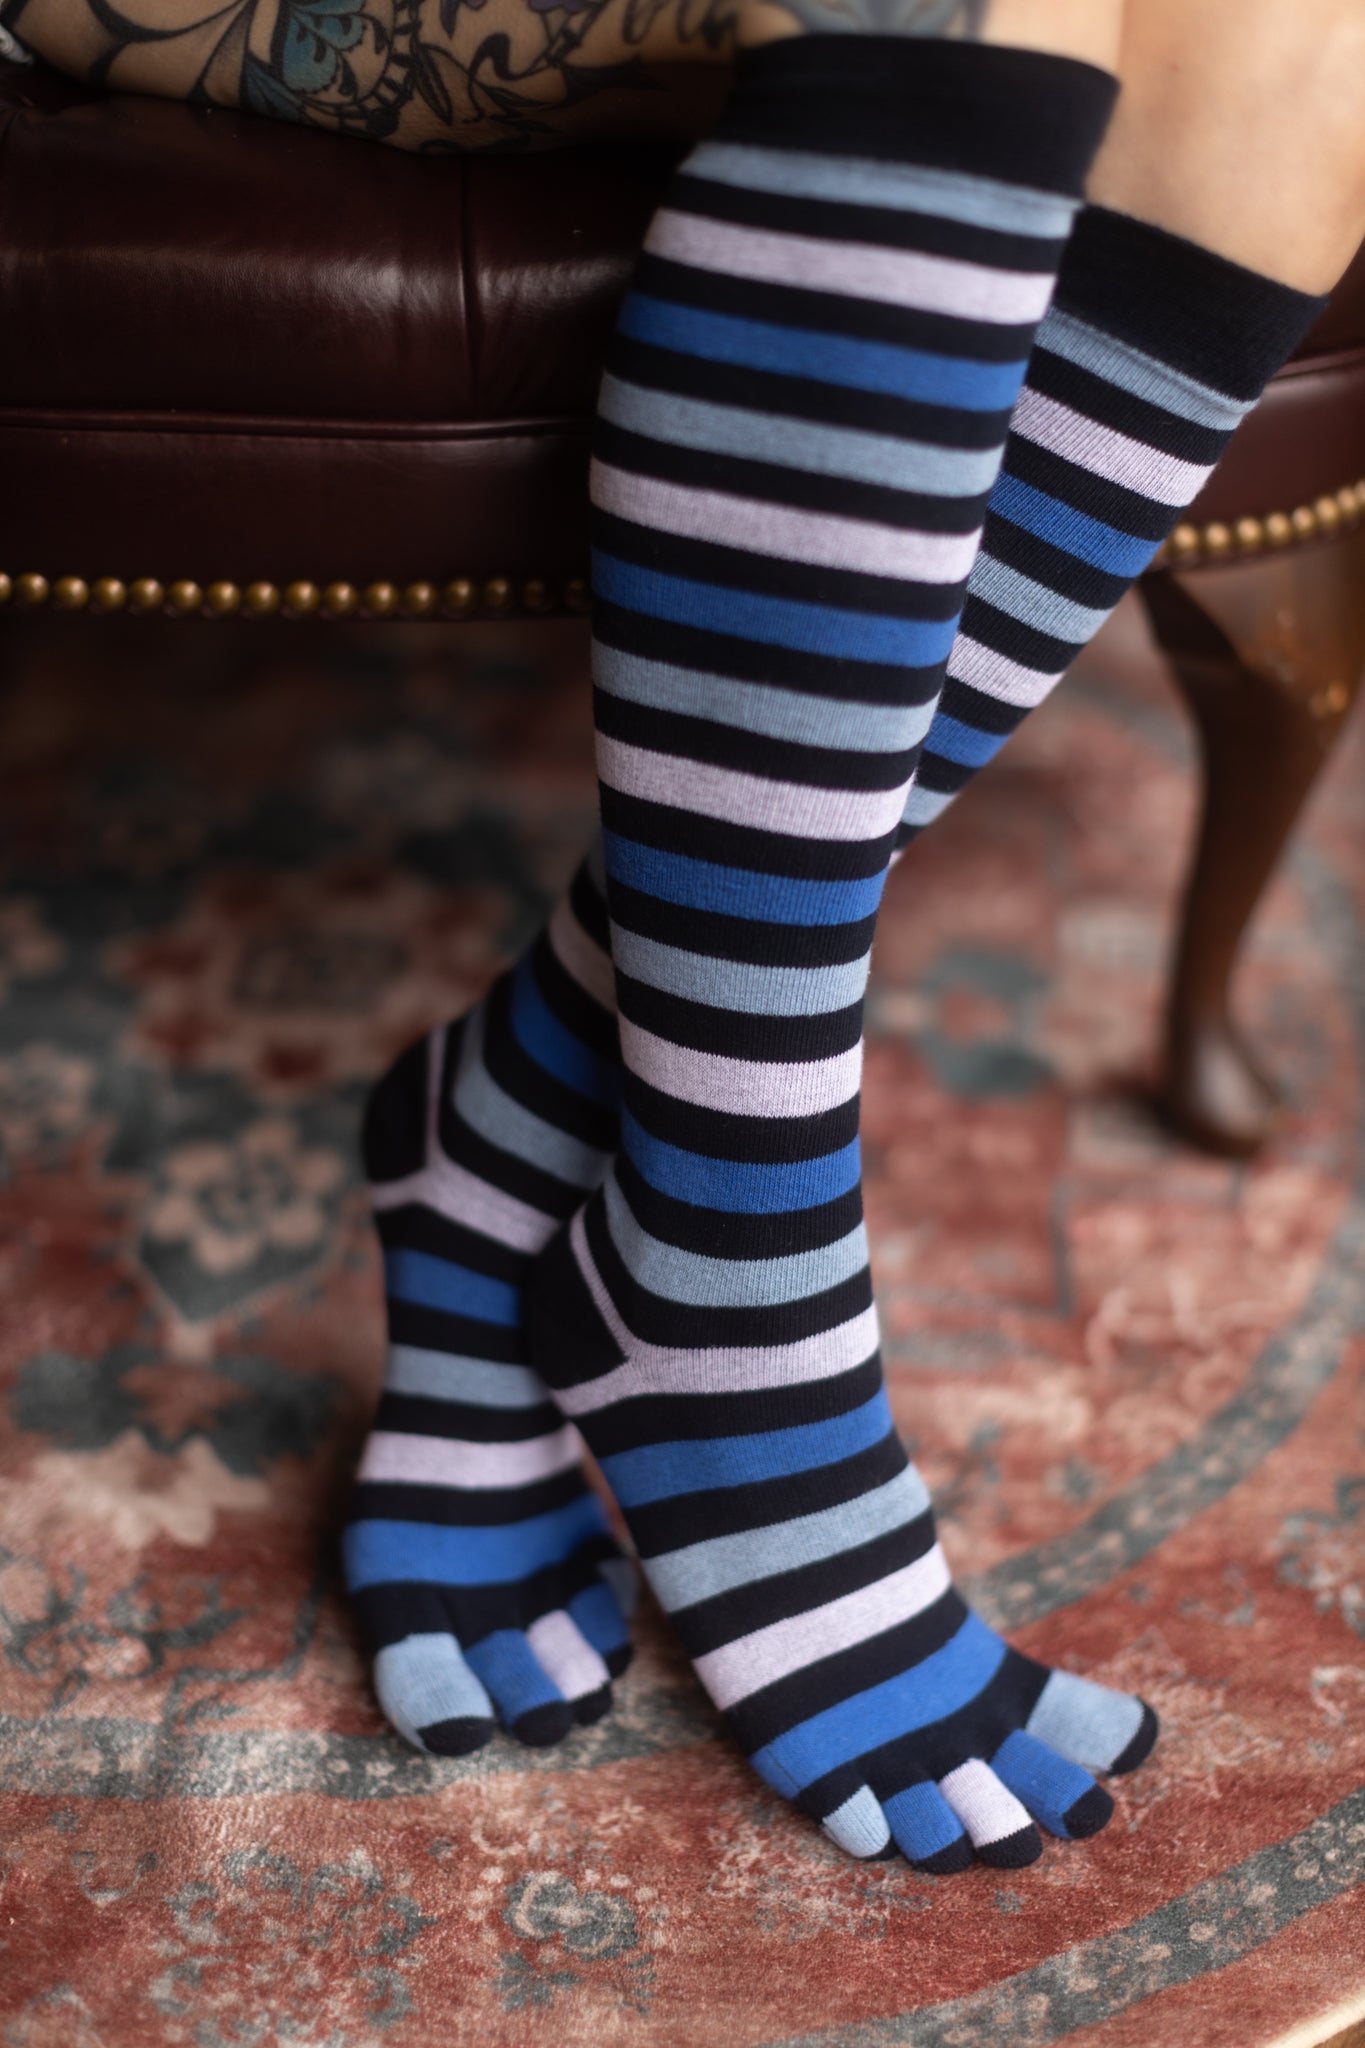 TOETOE® Socks - Wool Mid-Calf Toe Socks Black